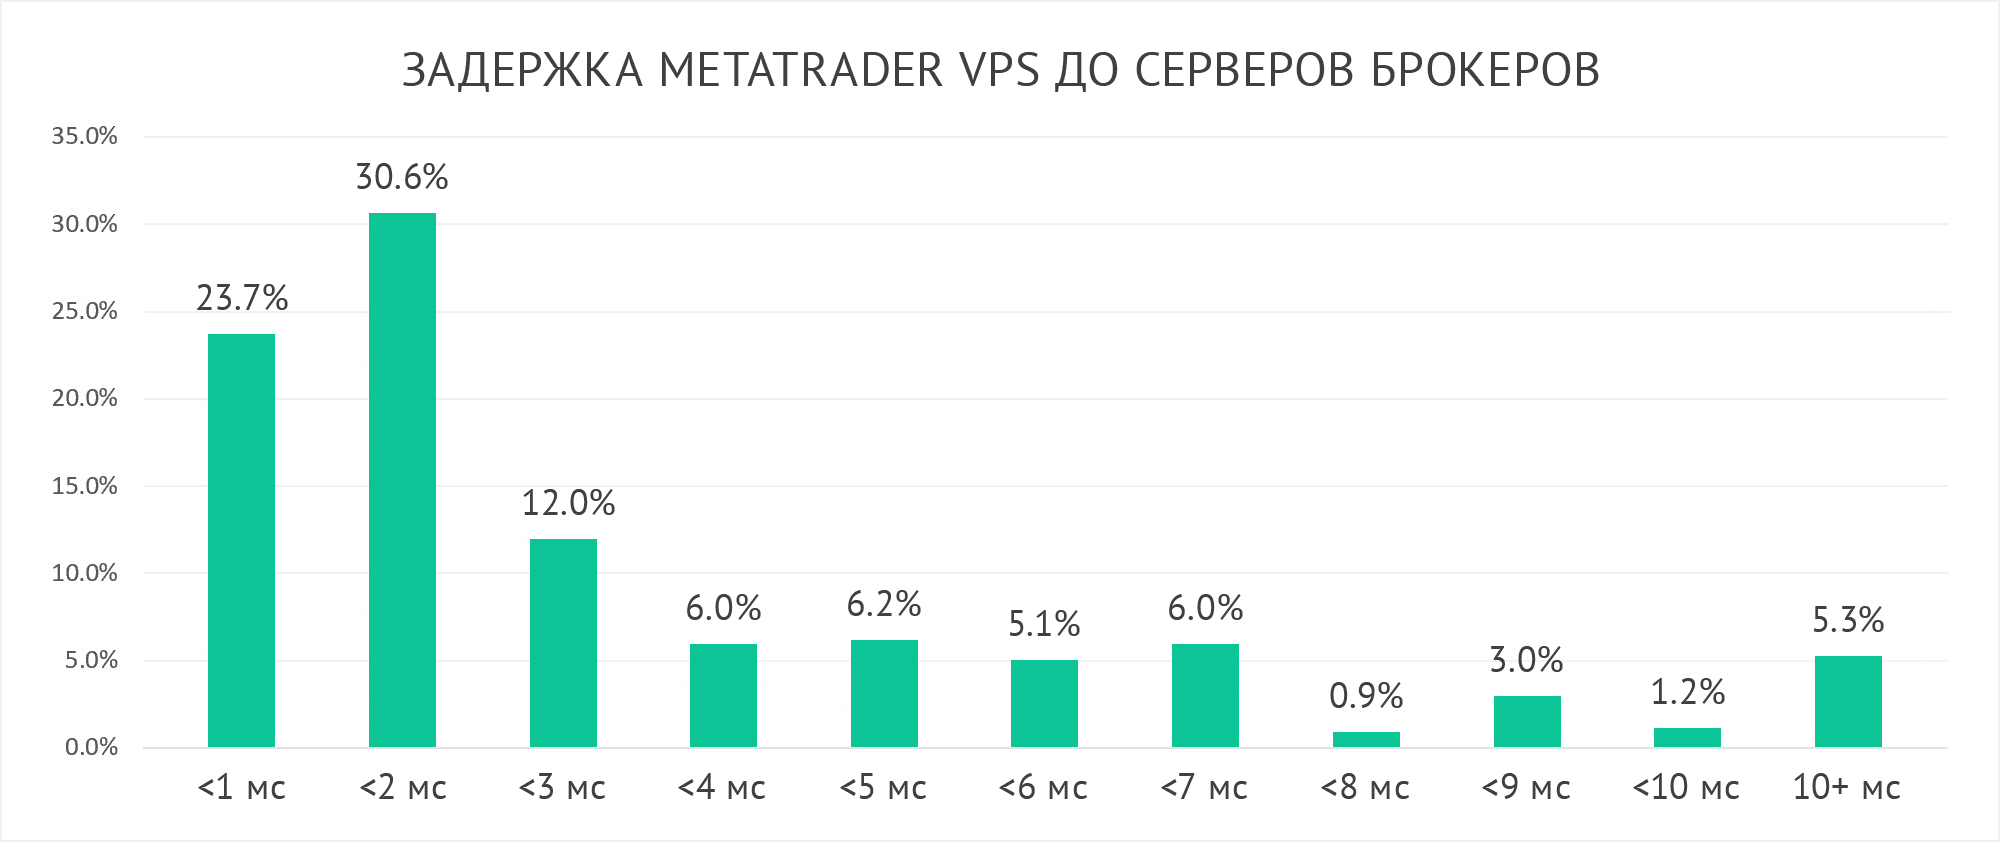 MetaTrader VPS обеспечивает менее 5 миллисекунд сетевой задержки при подключении к 80% брокерских серверов